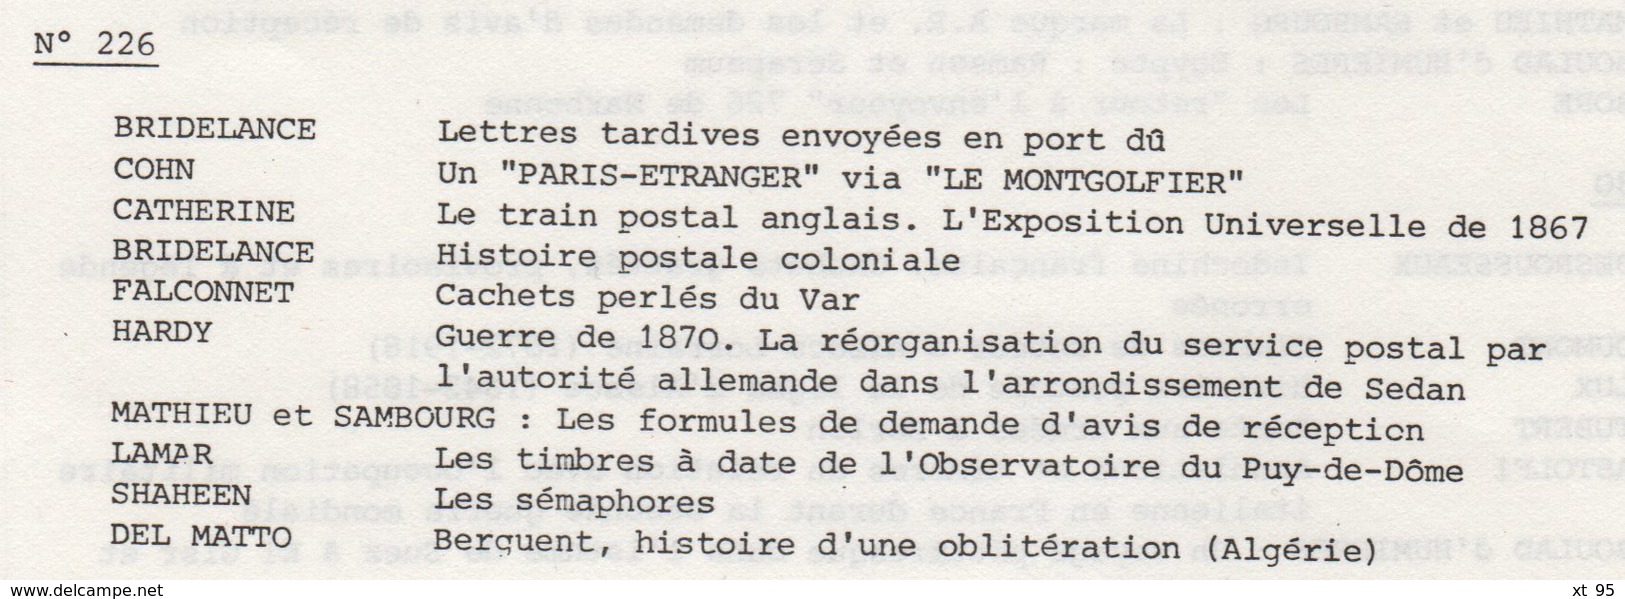 Les Feuilles Marcophiles - N°226 - Voir Sommaire - Frais De Port 2€ - Filatelia E Historia De Correos